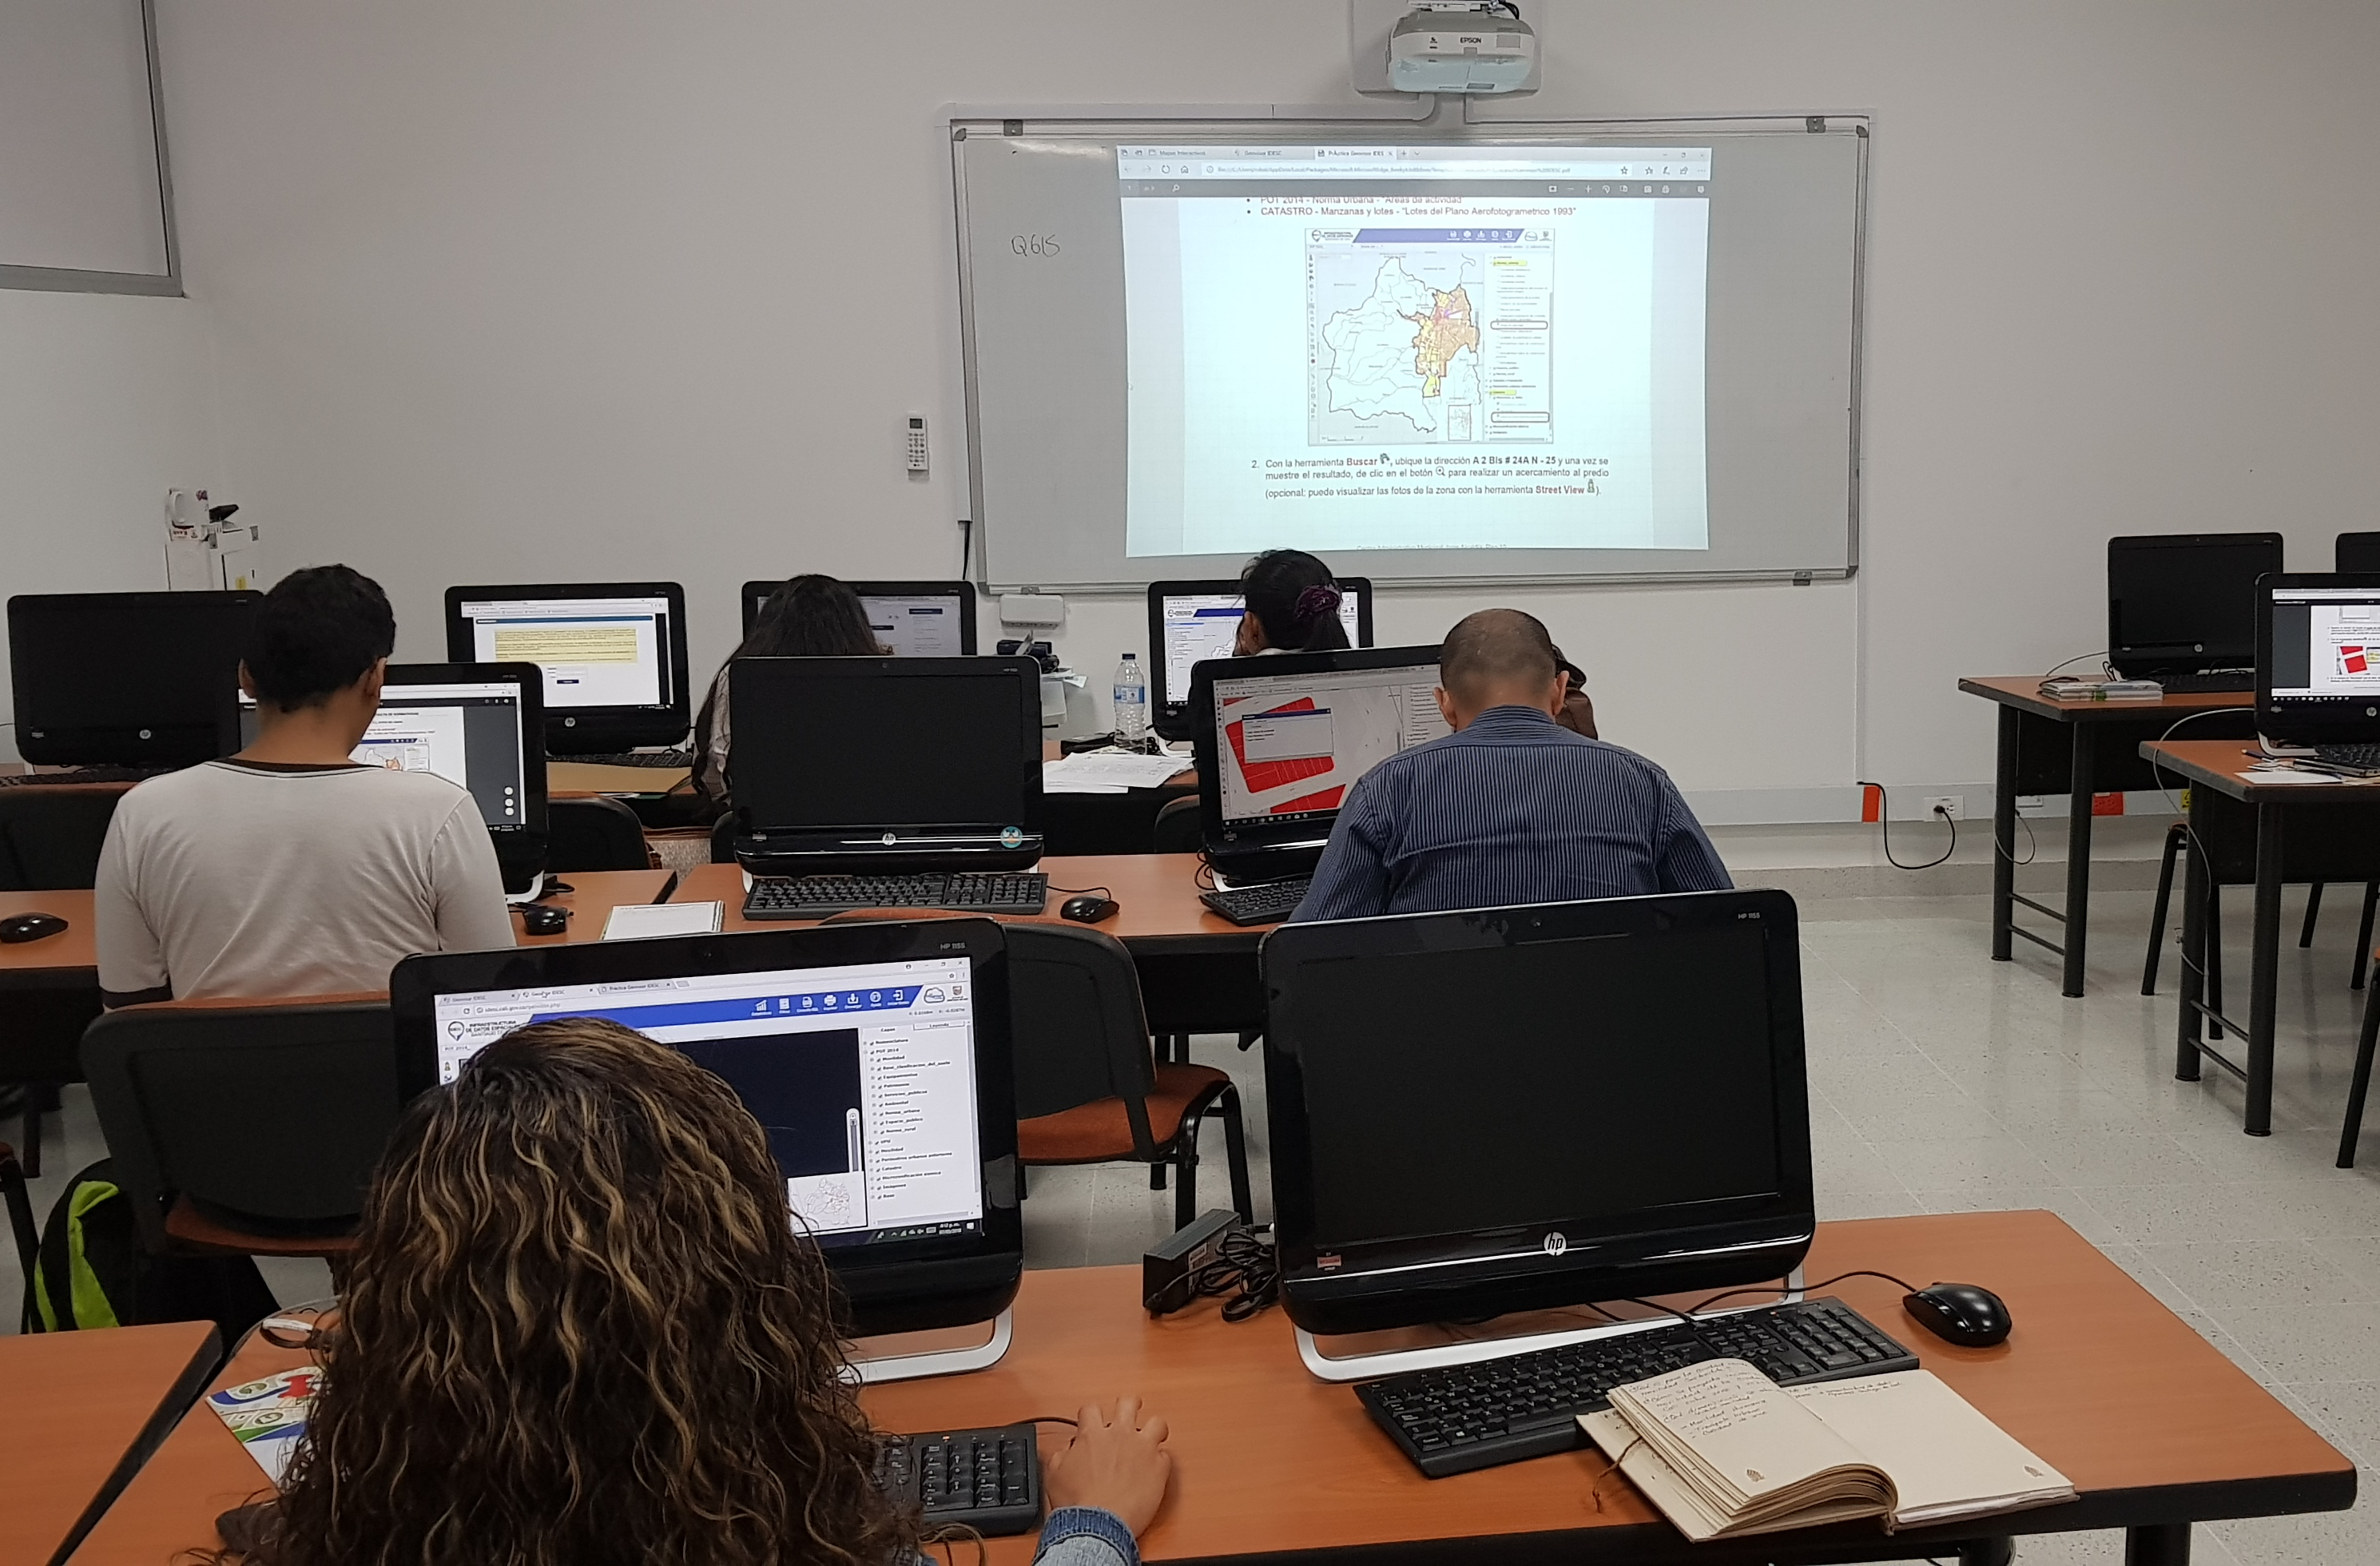 Personas en la sala de capacitaciones de la Escuela Nacional del Deporte sentadas frente a computadores realizando un taller práctico de los servicios de la IDESC.